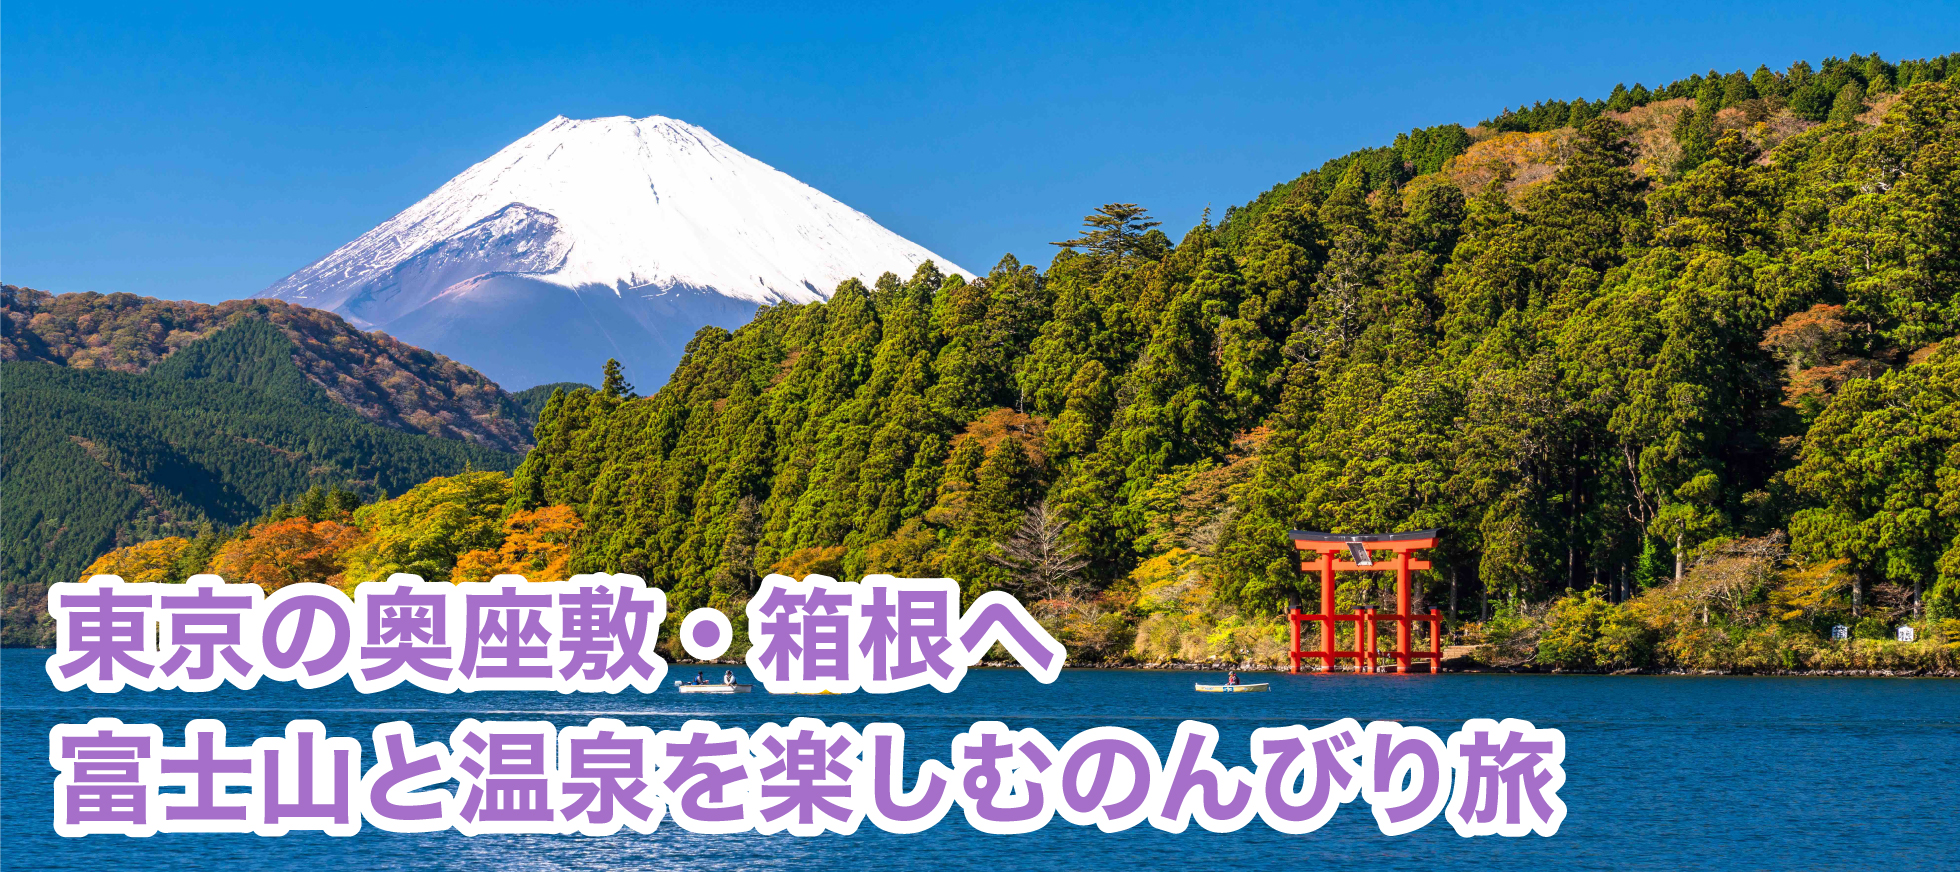 东京内客厅箱根悠闲之旅，赏富士山、泡温泉